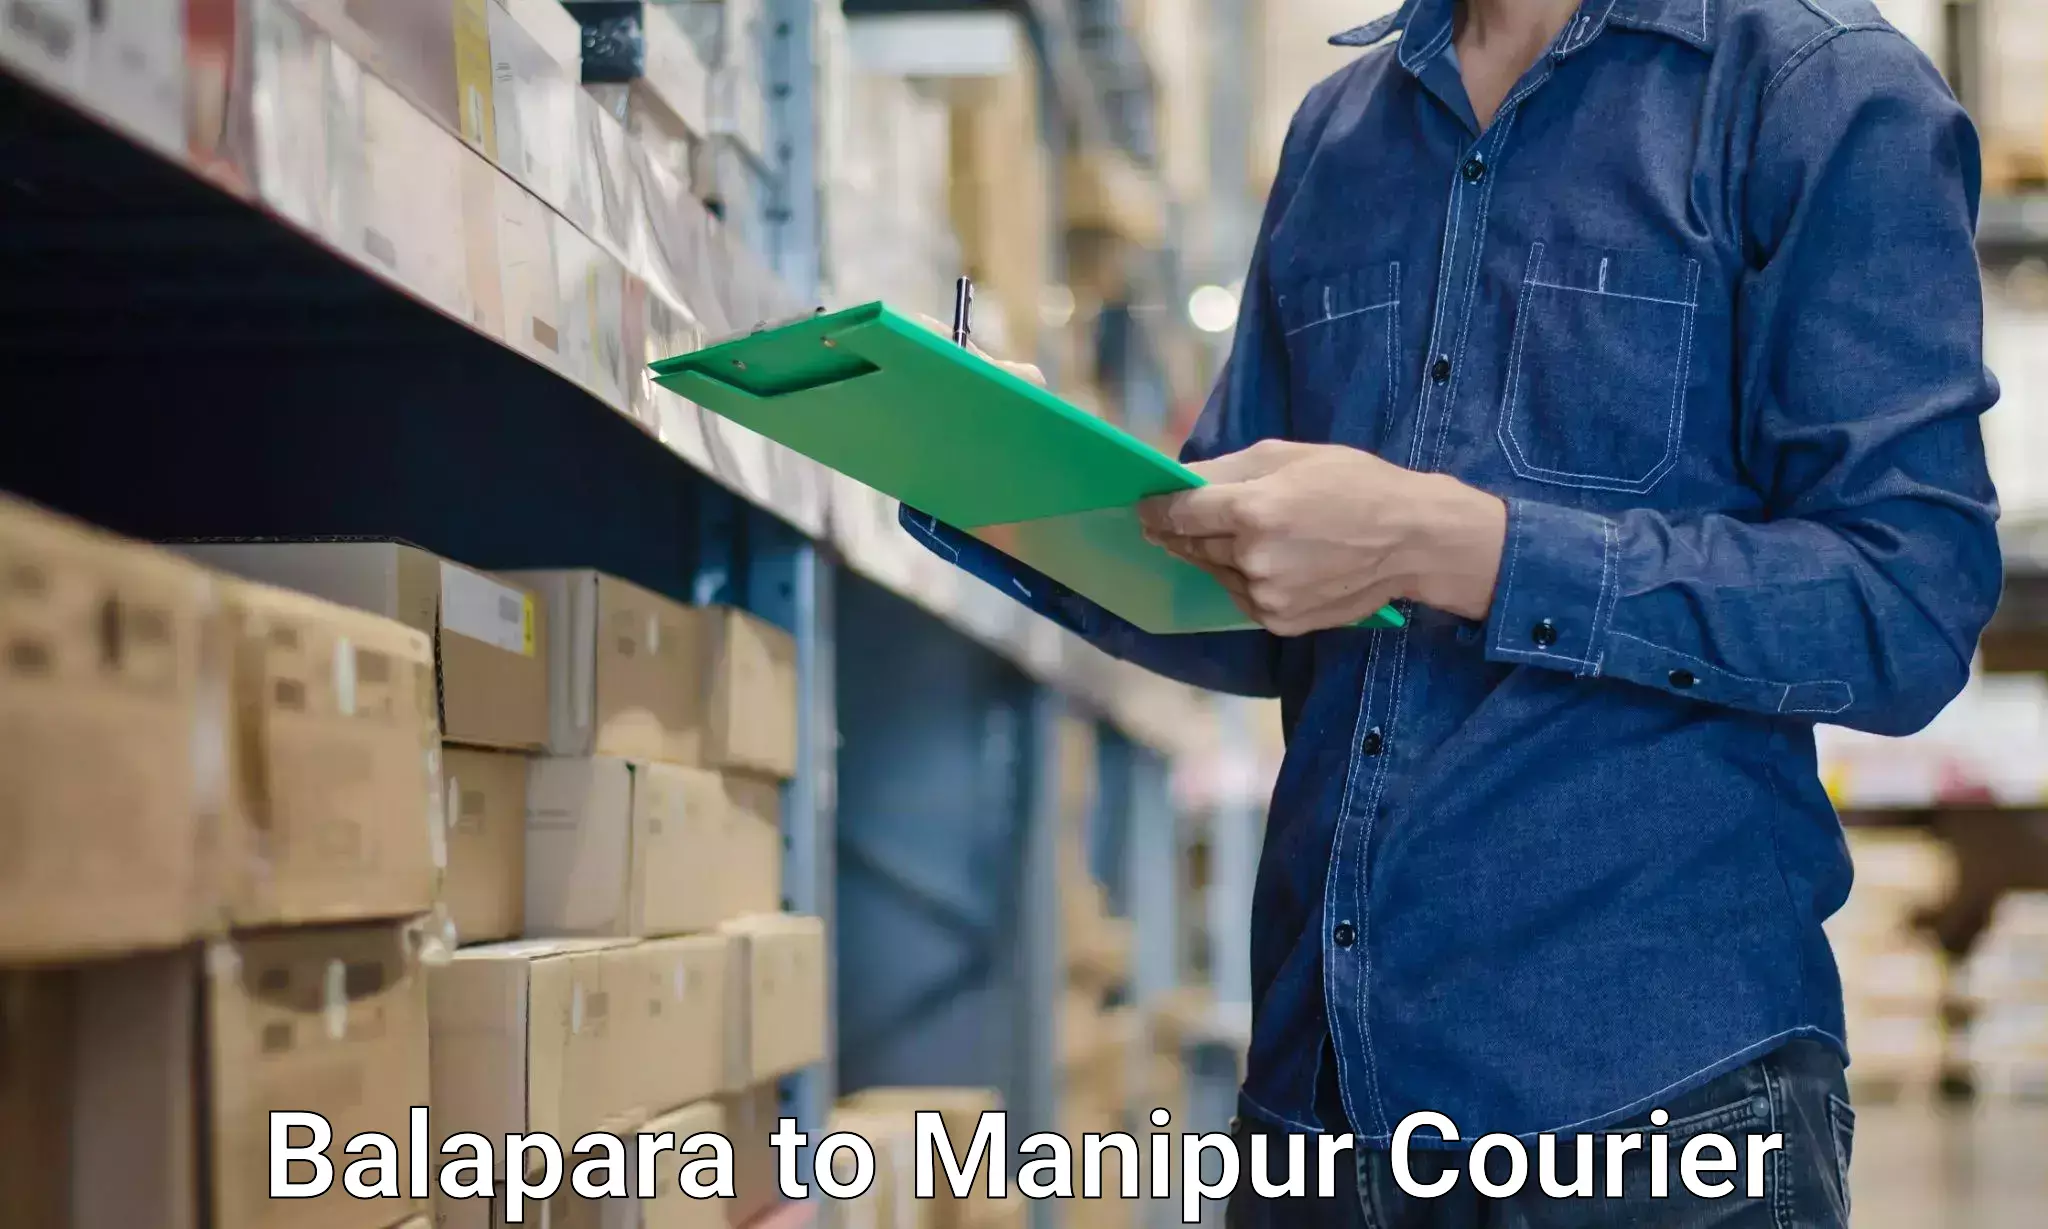 Furniture moving service Balapara to Manipur